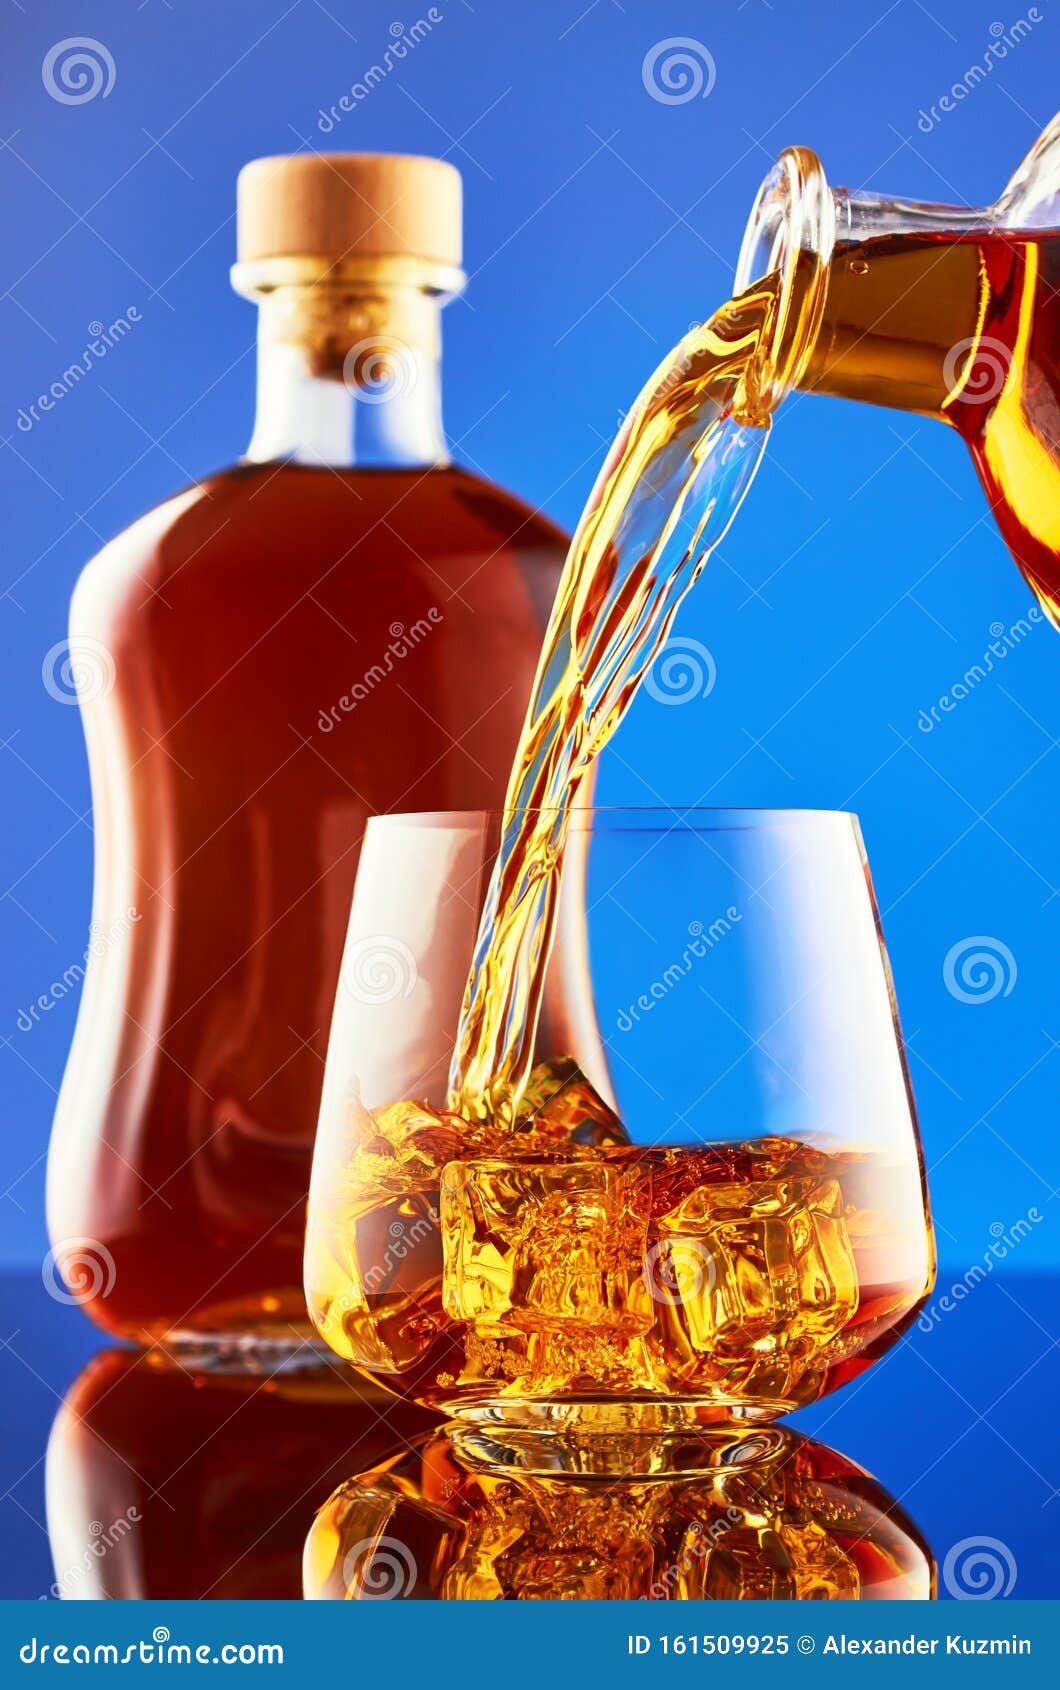 Regularmente Bonito Hacer deporte Whisky sobre fondo azul imagen de archivo. Imagen de amarillo - 161509925